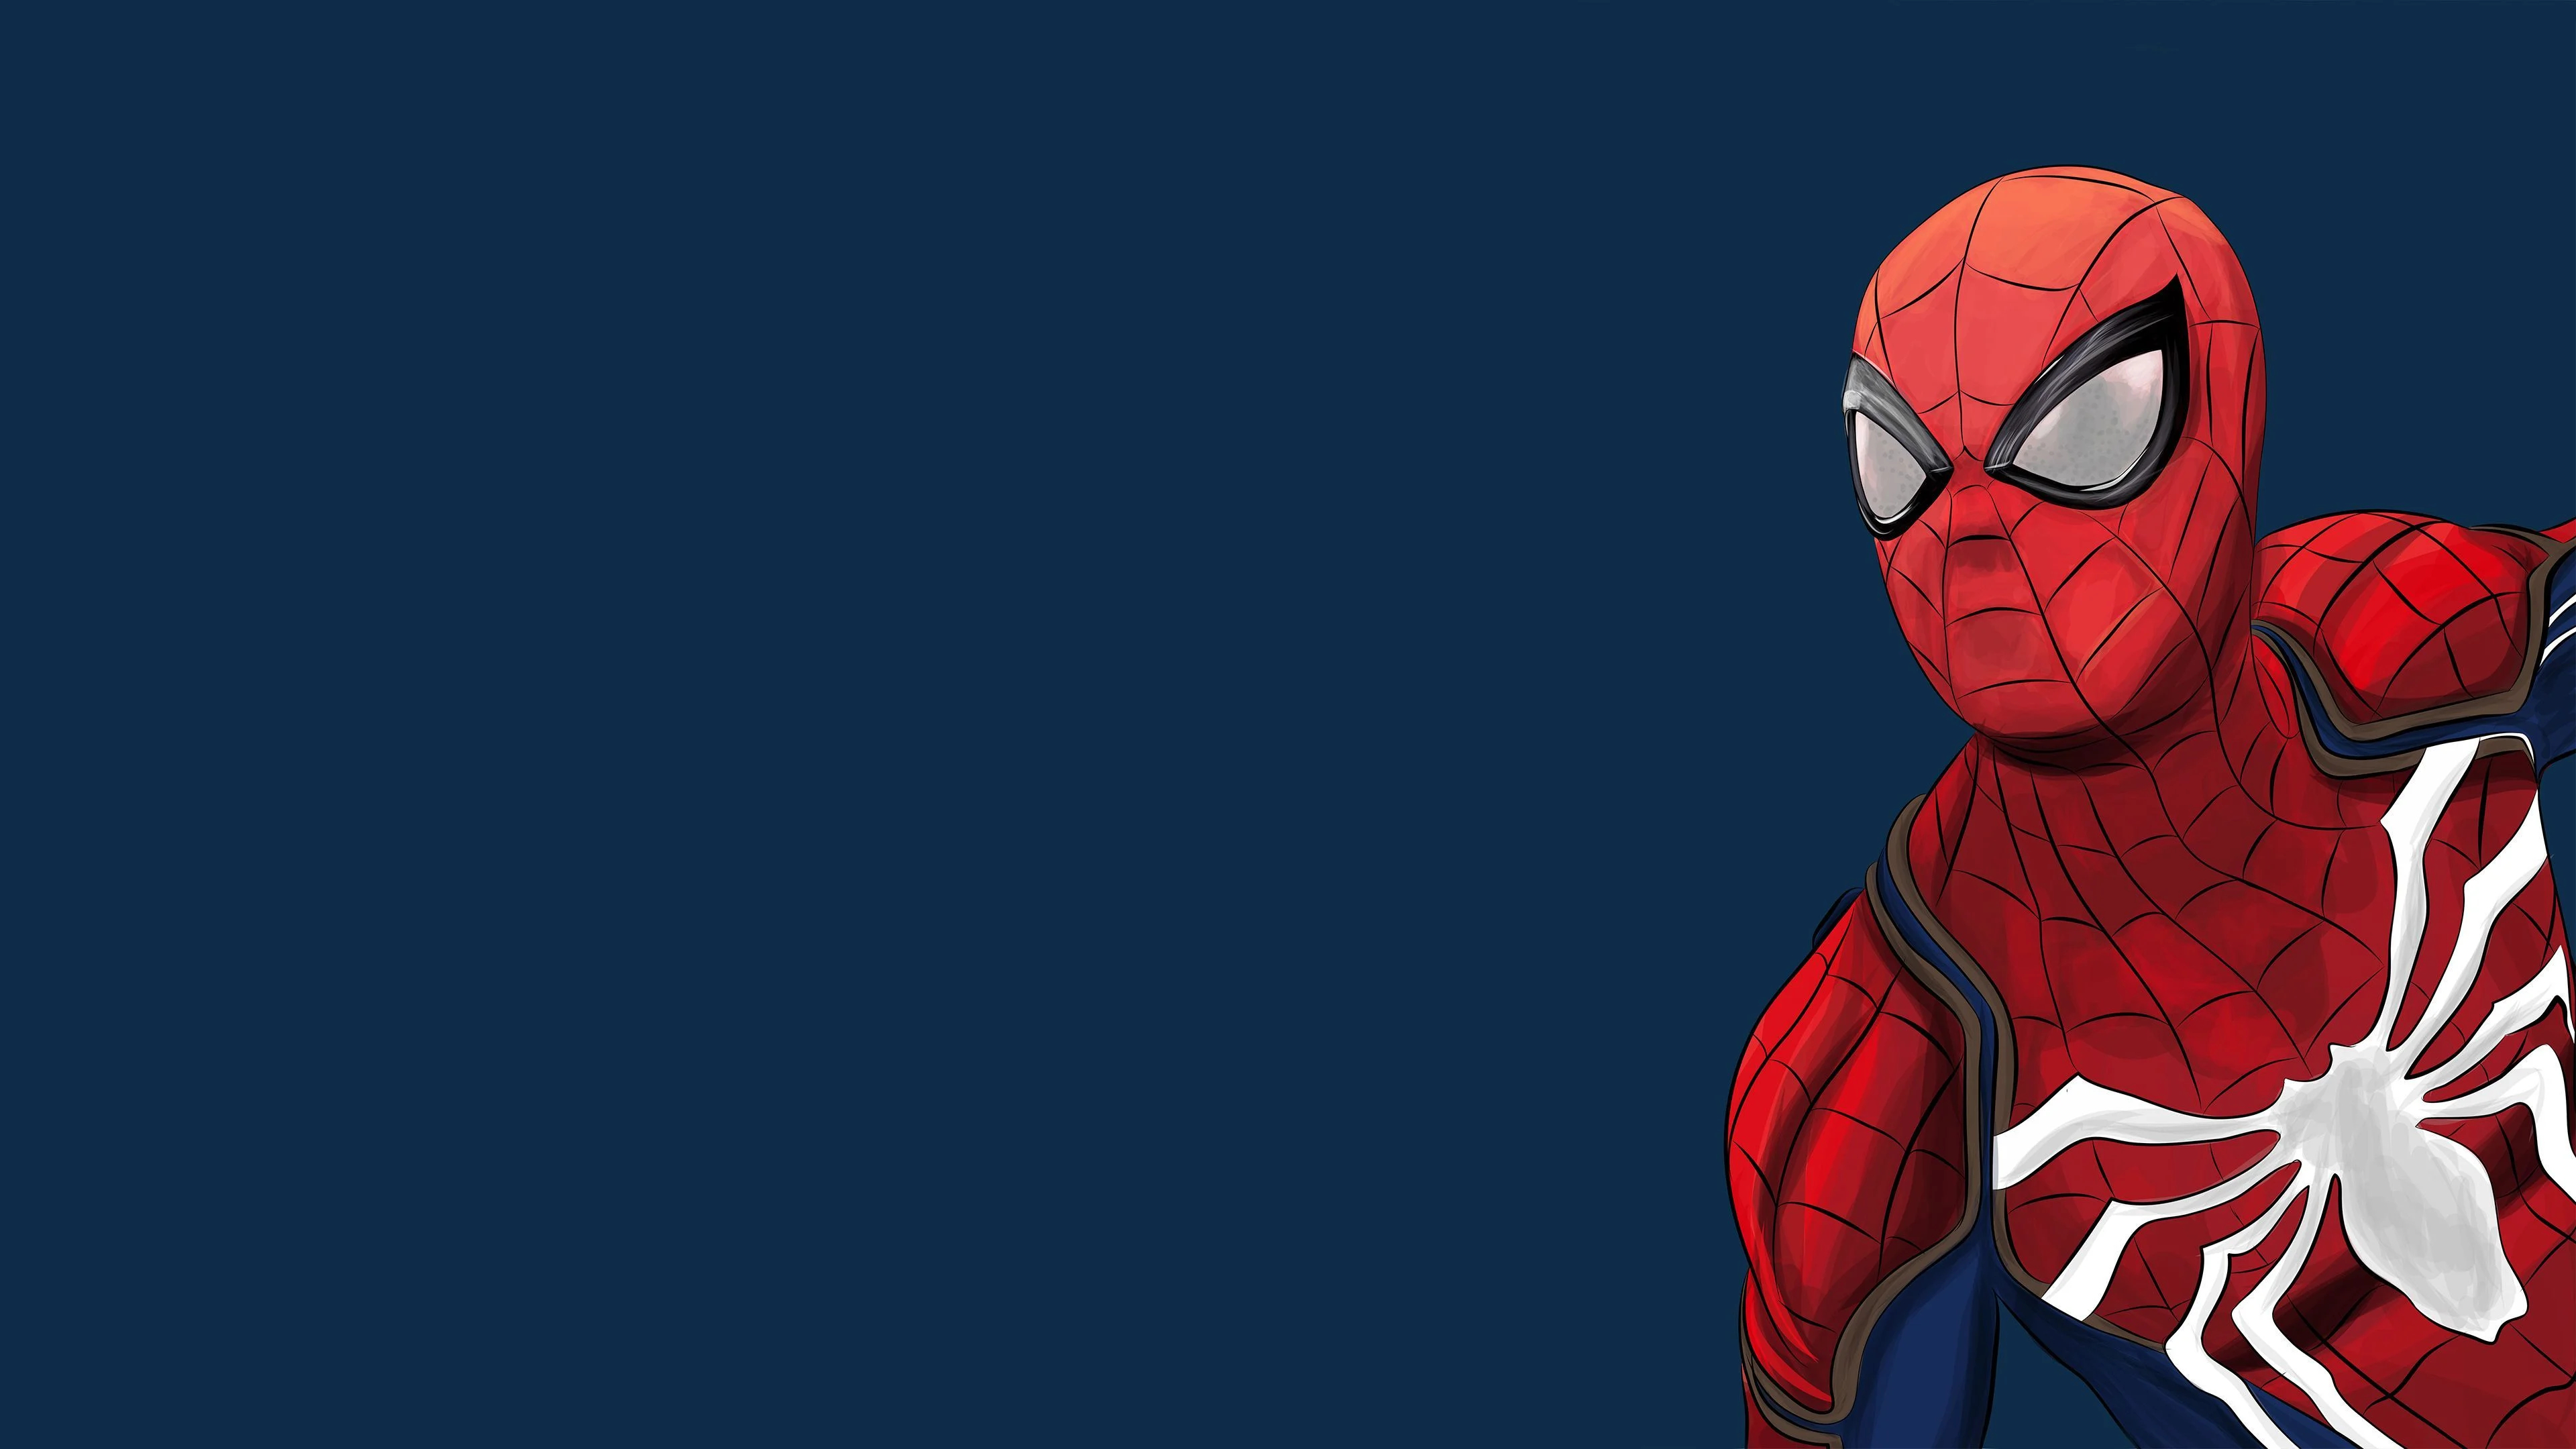 3840x2160 Spiderman Desktop Wallpapers Top Free Spiderman Desktop Backgrounds